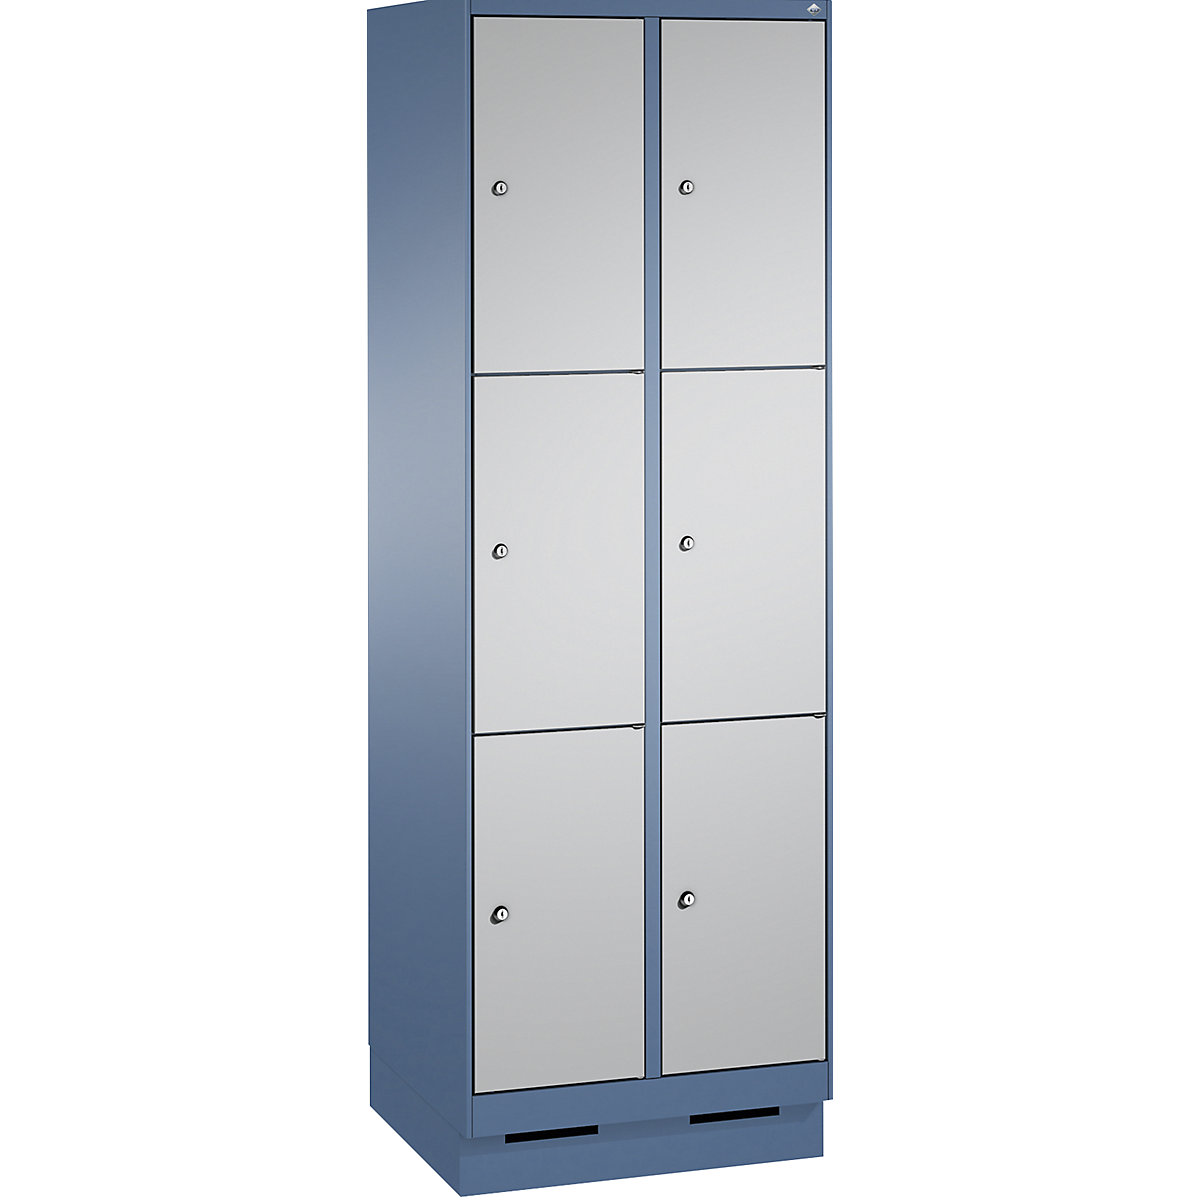 Armoire à casiers sur socle EVOLO – C+P, 2 compartiments, 3 casiers chacun, largeur compartiments 300 mm, bleu distant / aluminium-13